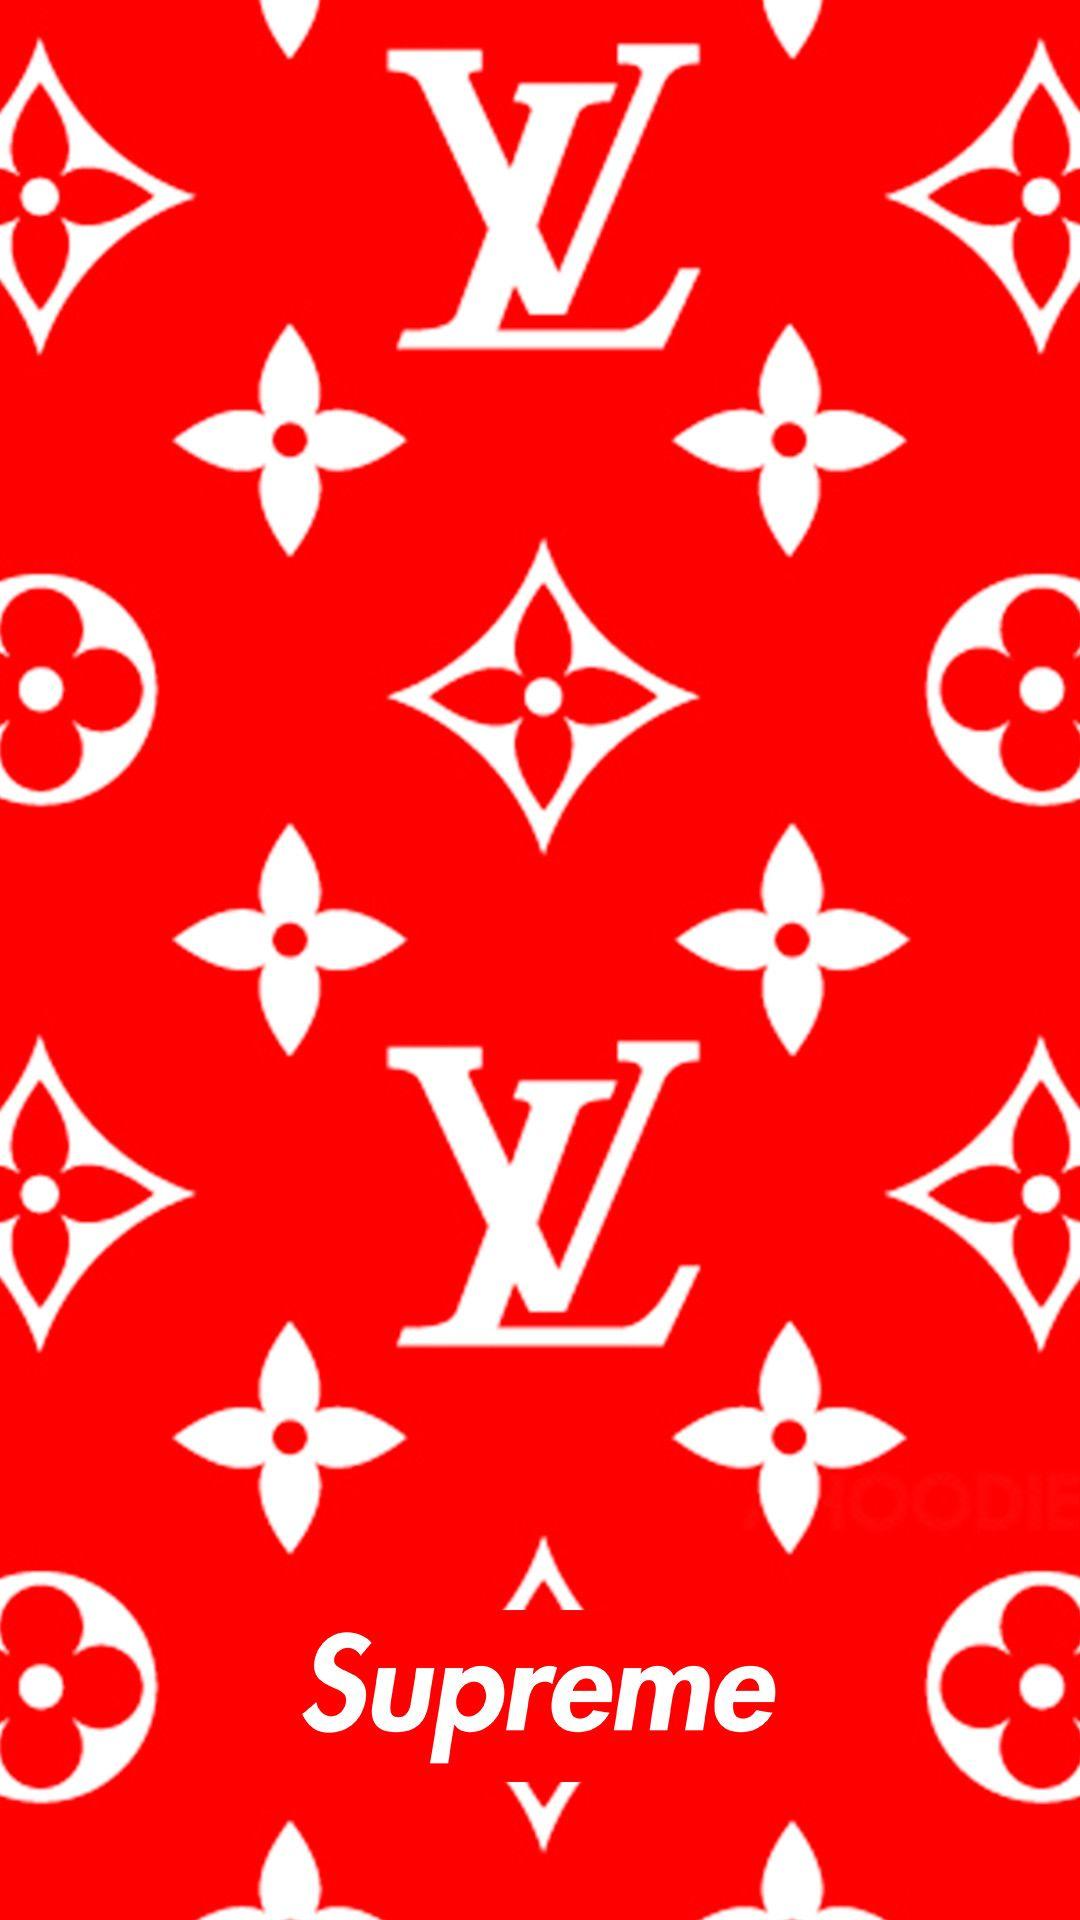 Louis Vuitton Supreme Red Logo - 1080x1920 Download Supreme x louis vuitton 1080 x 1920 Wallpapers ...